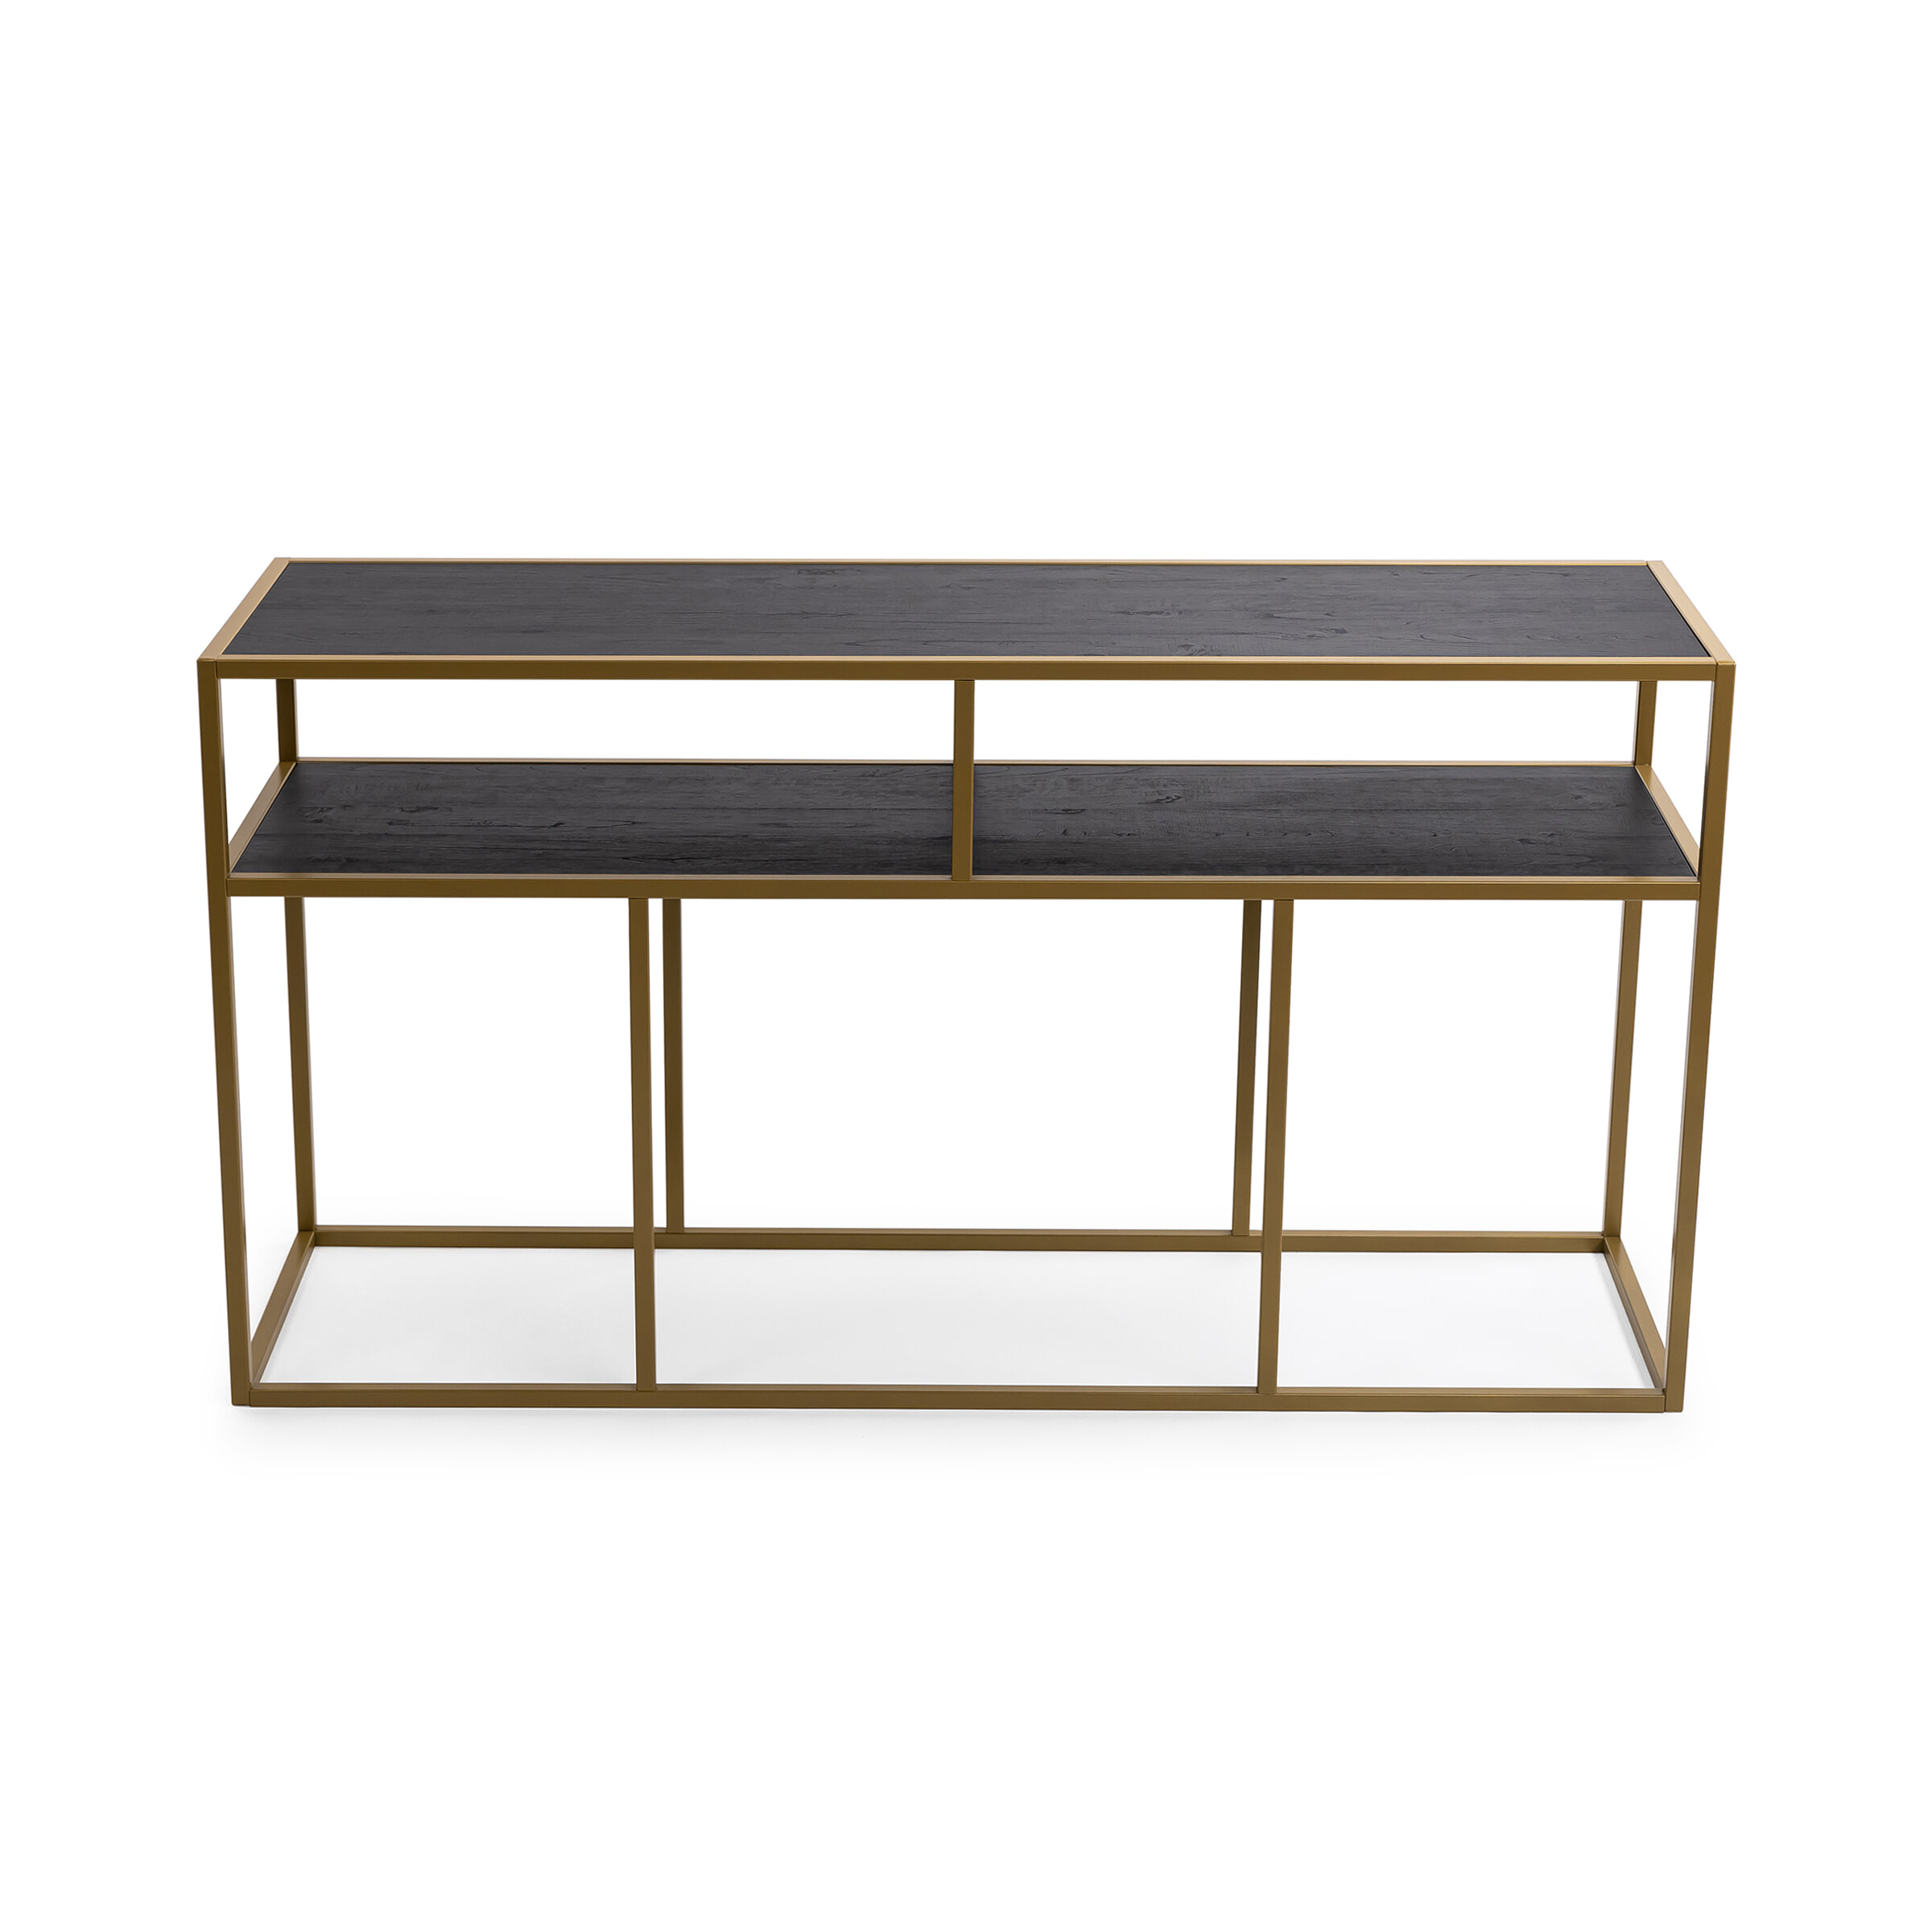 STALUX Side-table Teun 150cm - goud / zwart eiken